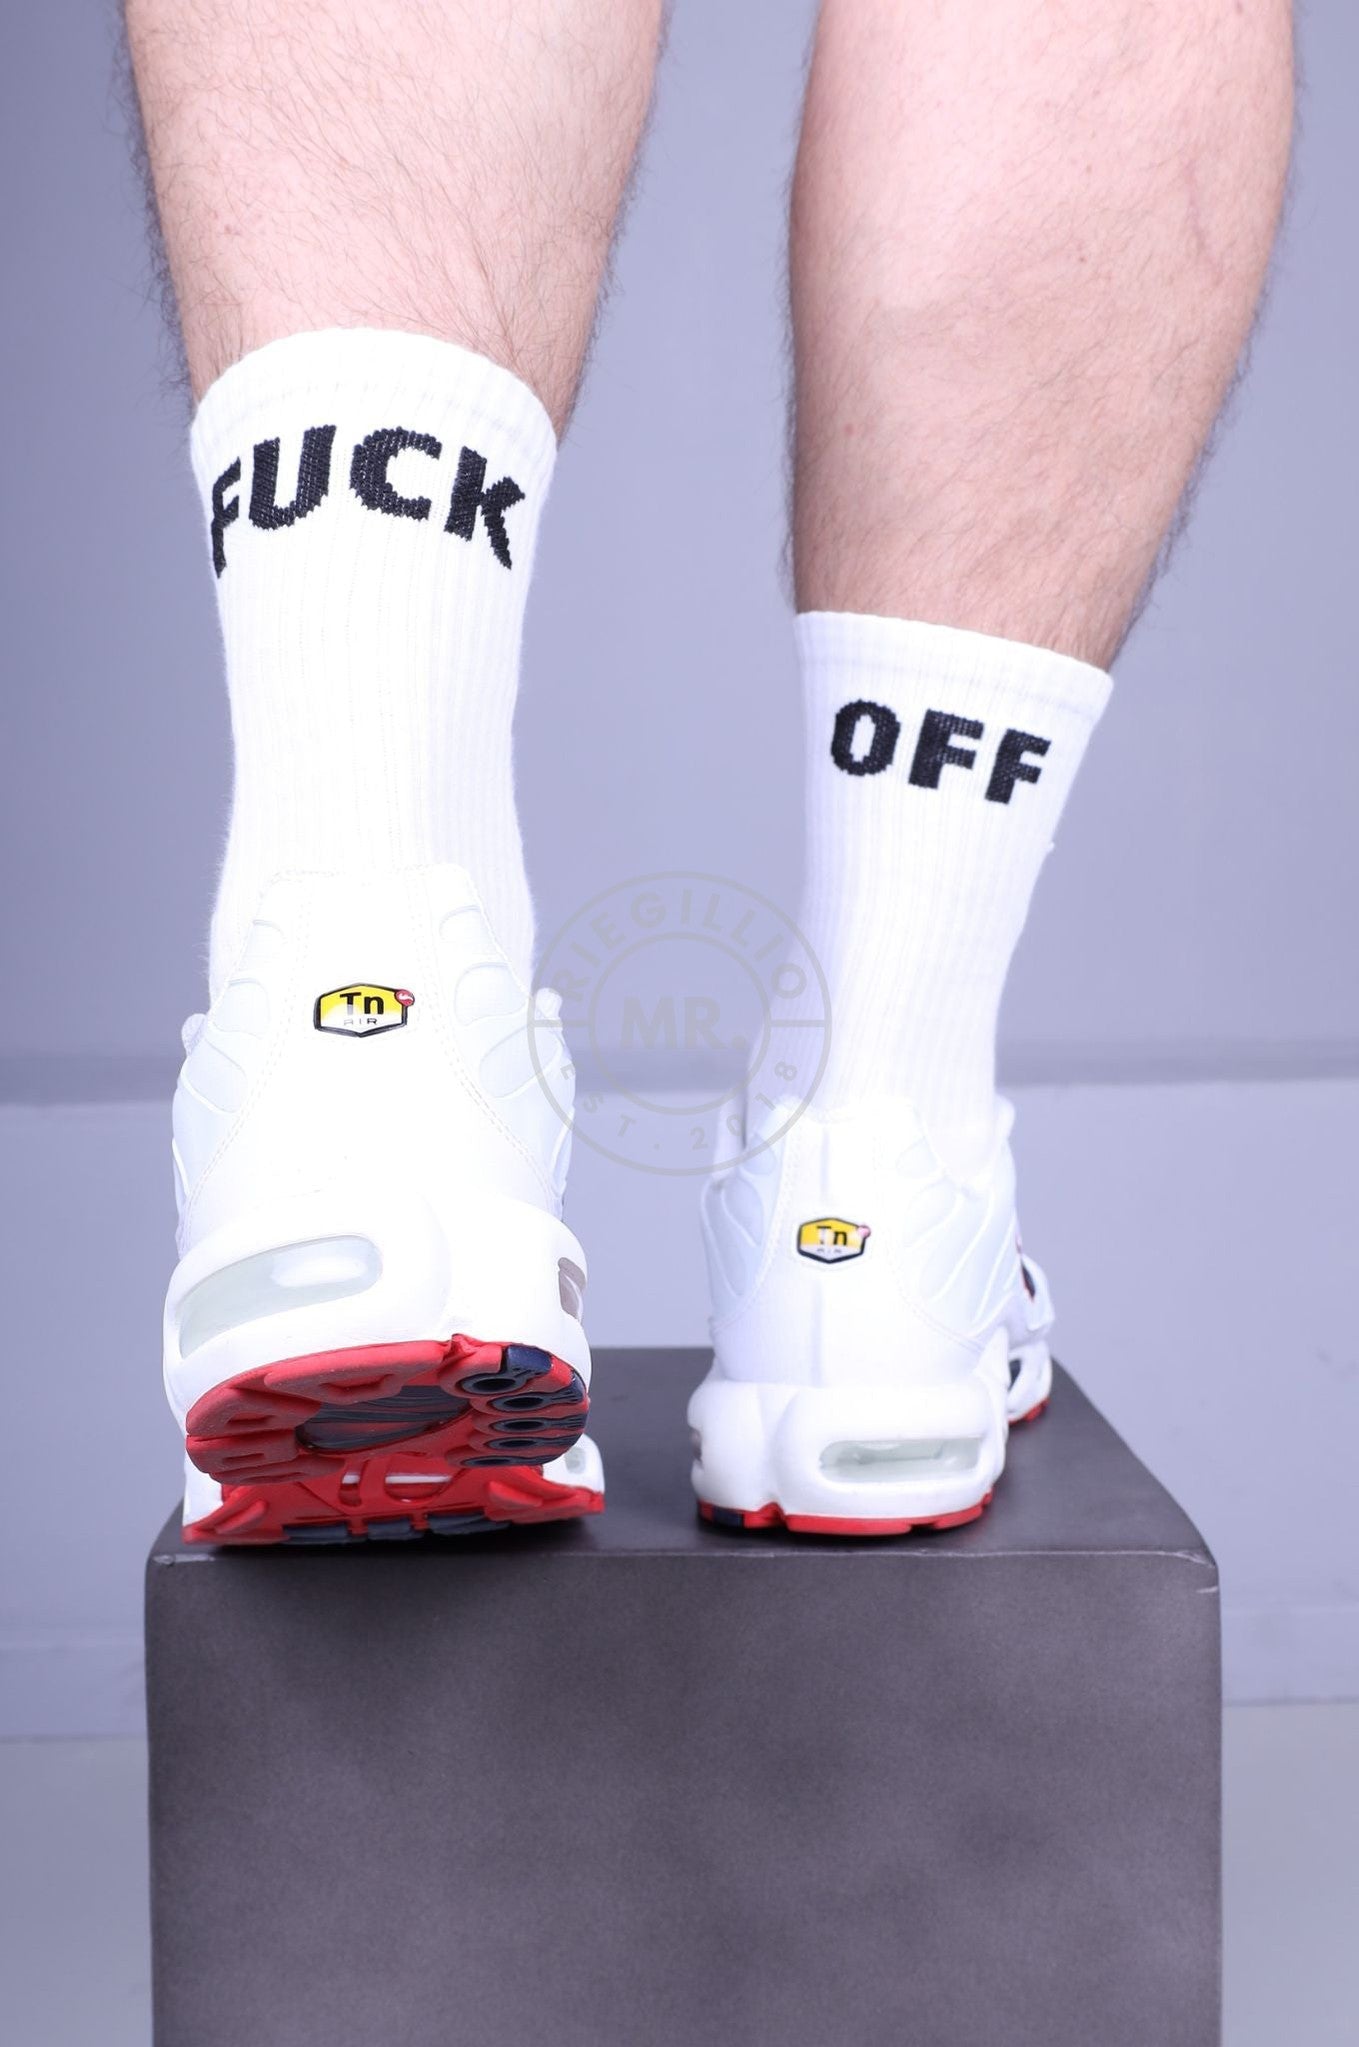 SNKRFTSH Socks - FUCK OFF-at MR. Riegillio